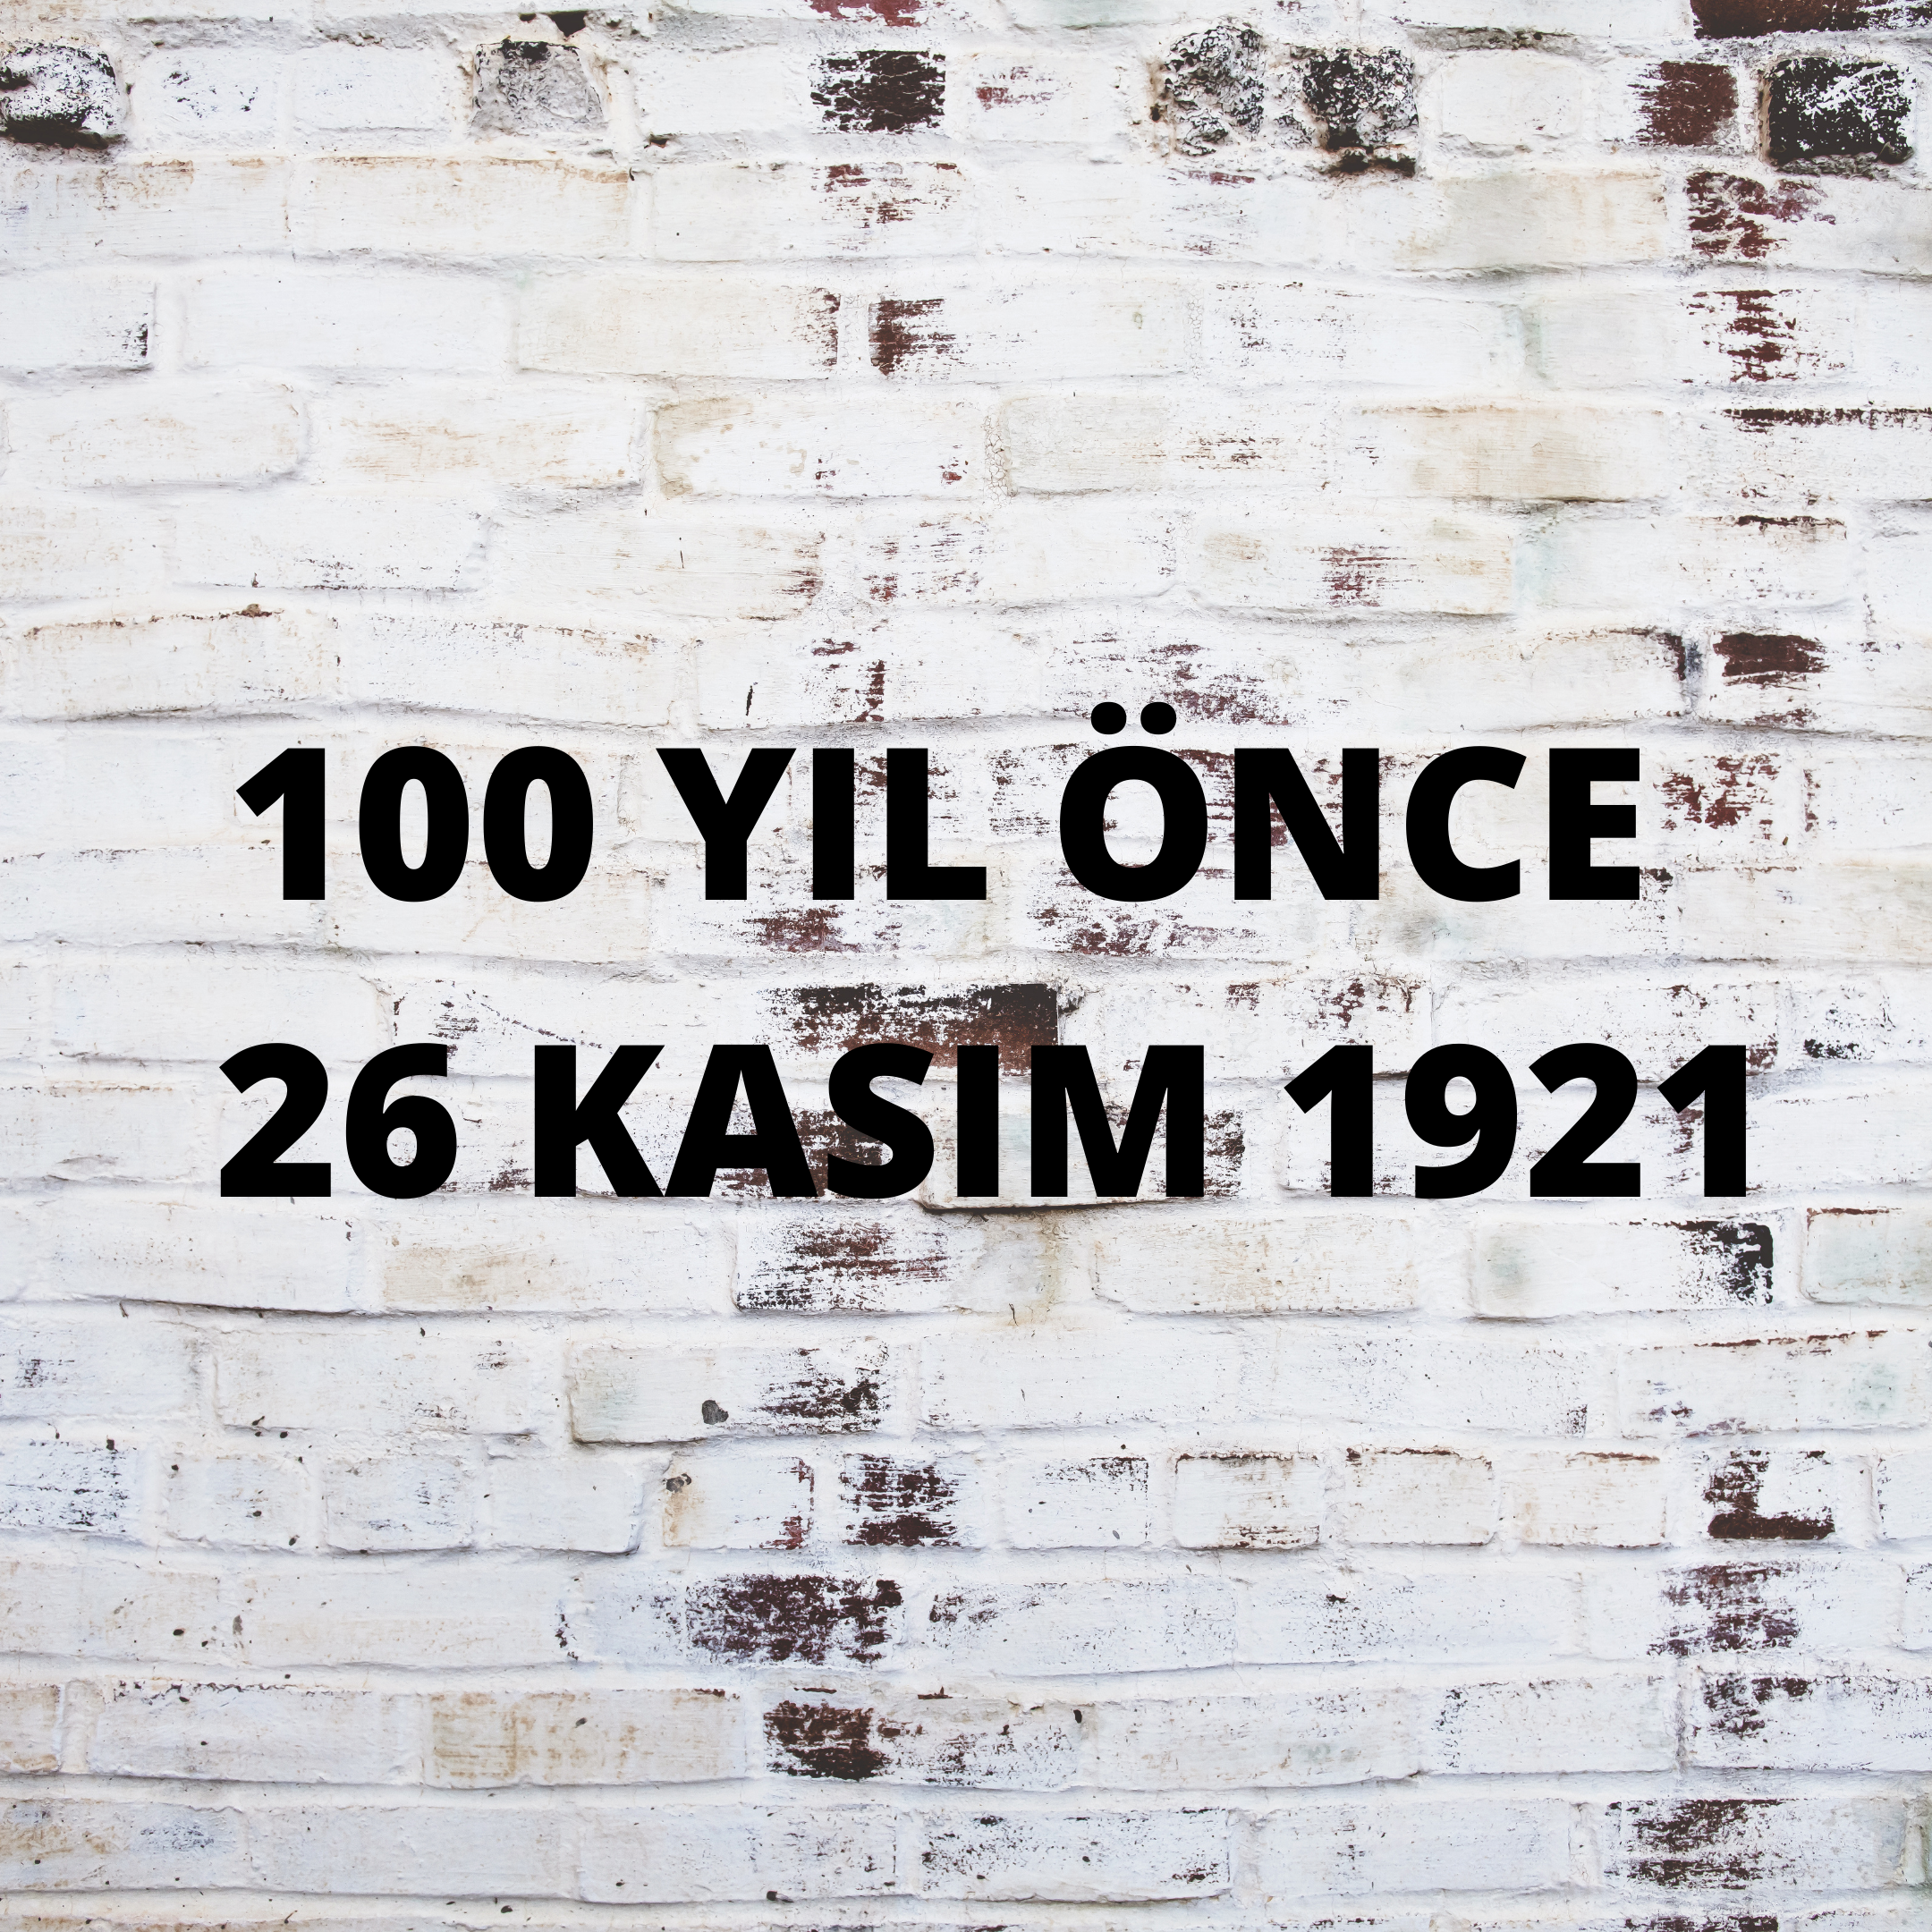 100 YIL ÖNCE 26 KASIM 1921